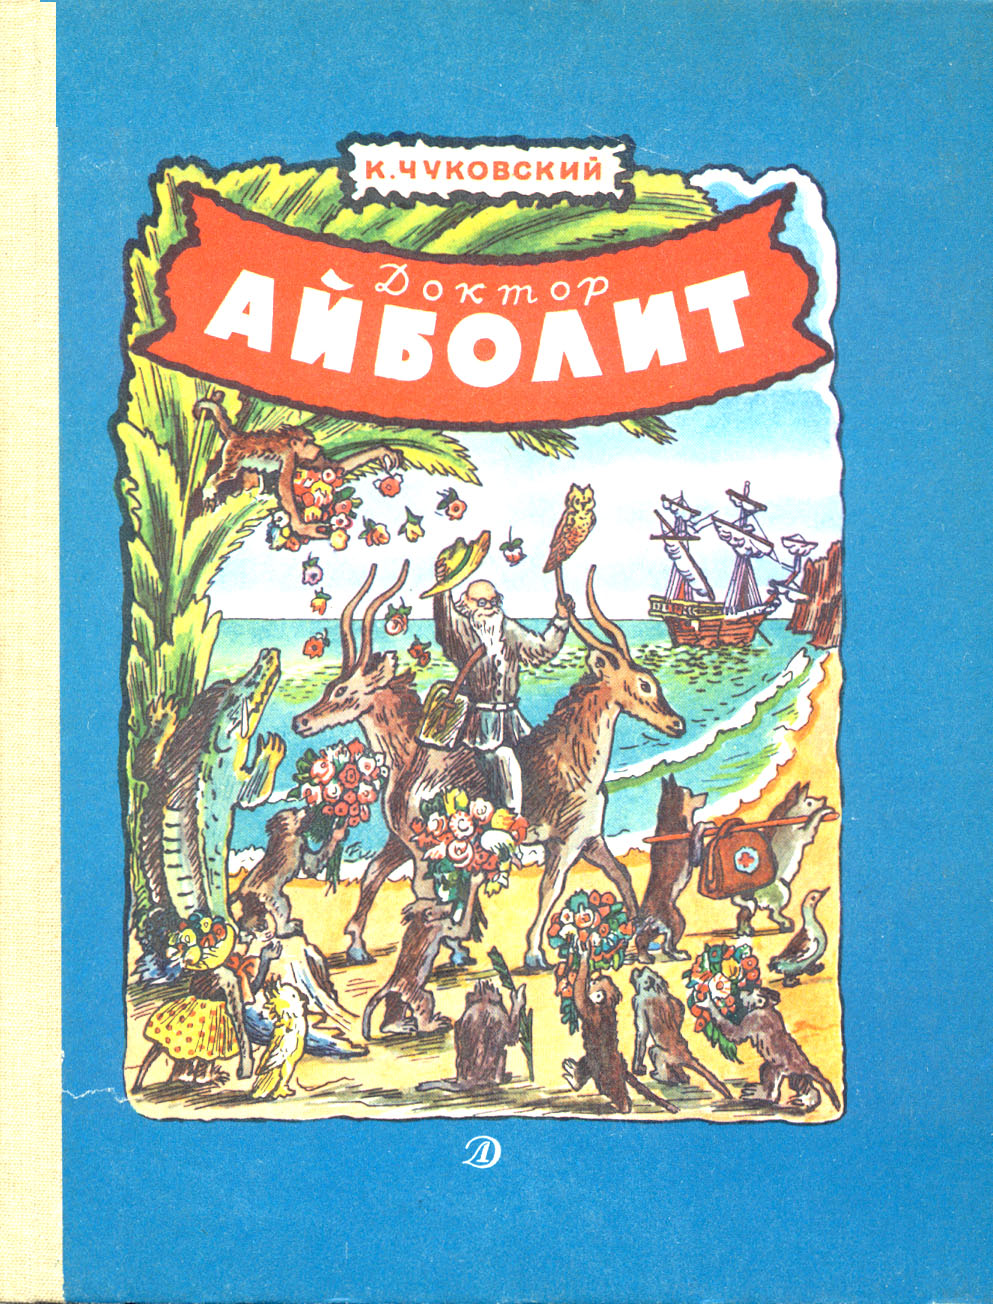 Обложка «Доктора Айболита» работы В.Конашевича (М.: Дет. лит., 1989)